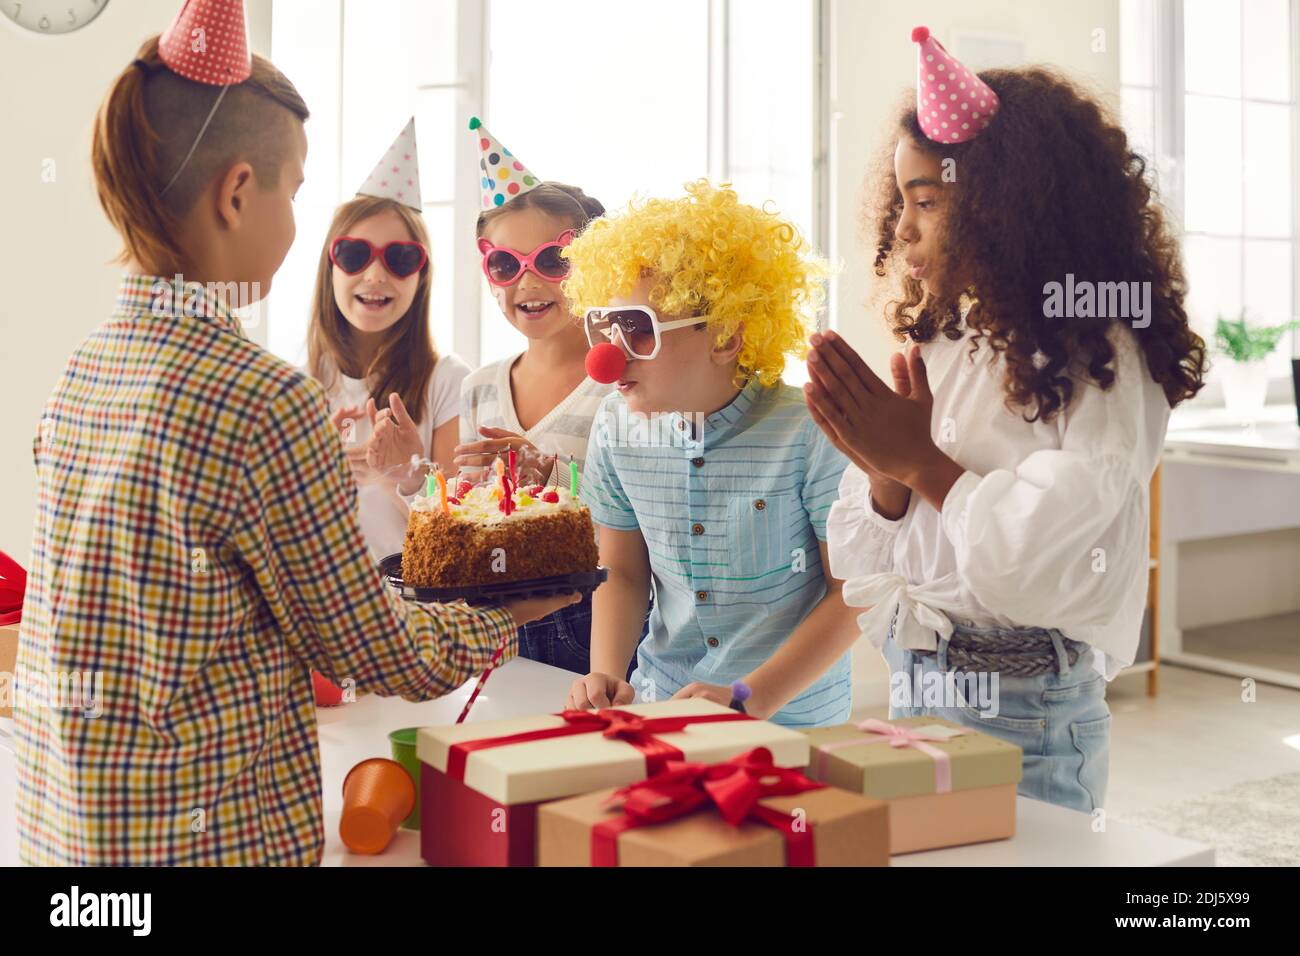 Groupe d'enfants félicite leur ami pour son anniversaire et lui donne des cadeaux et un gâteau. Banque D'Images